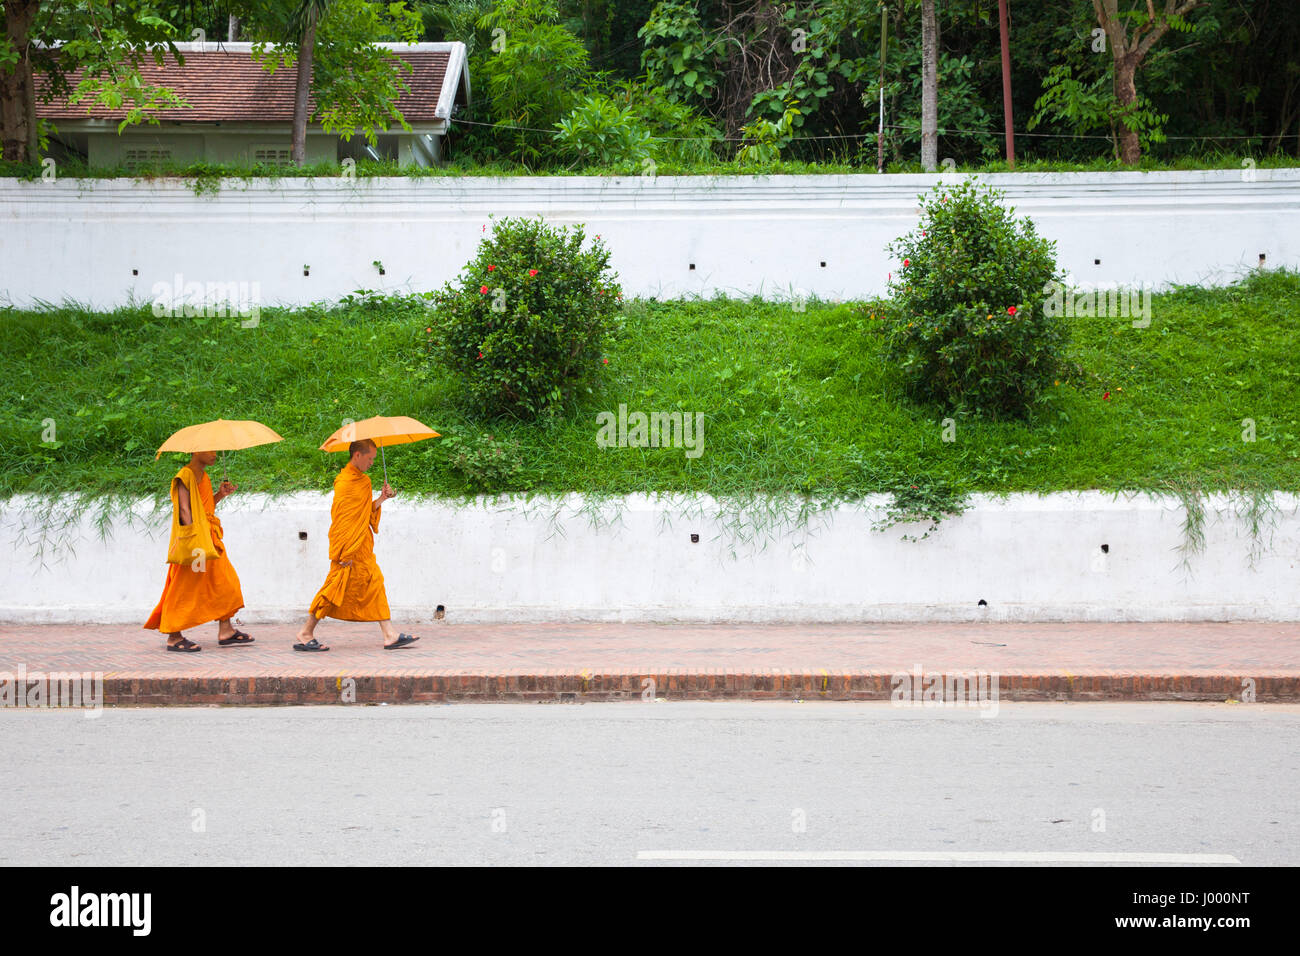 La República Democrática Popular Lao, Luang Prabang - 20 DE JUNIO: monjes budistas bajo paraguas caminando por las calles de Luang Prabang, Laos Foto de stock